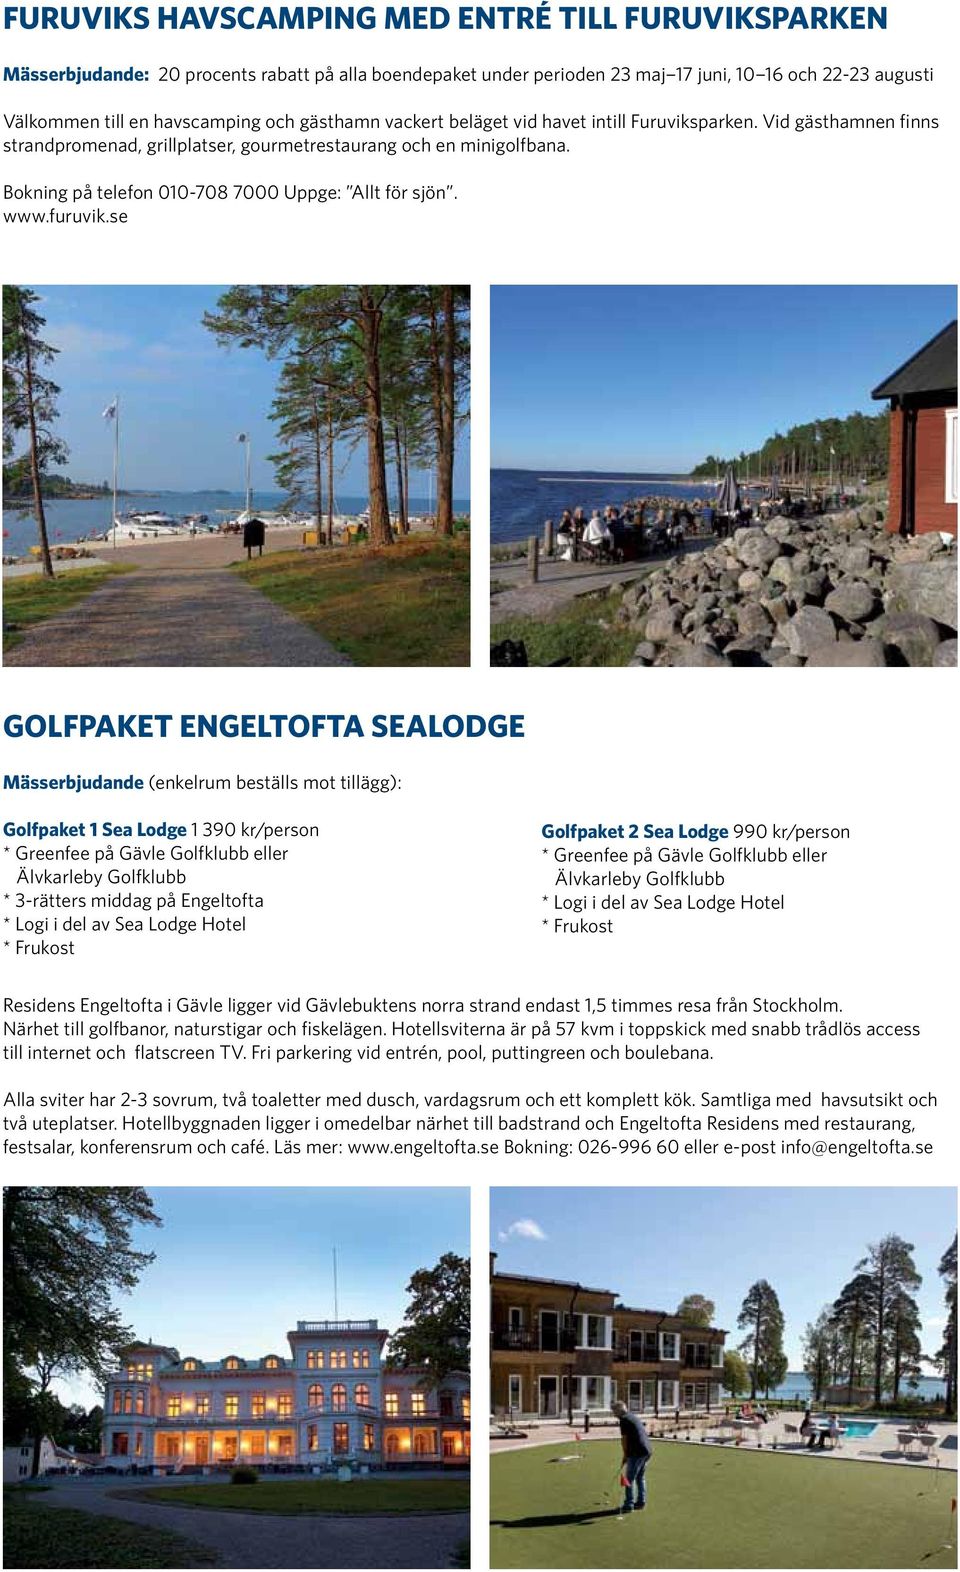 Bokning på telefon 010-708 7000 Uppge: Allt för sjön. www.furuvik.